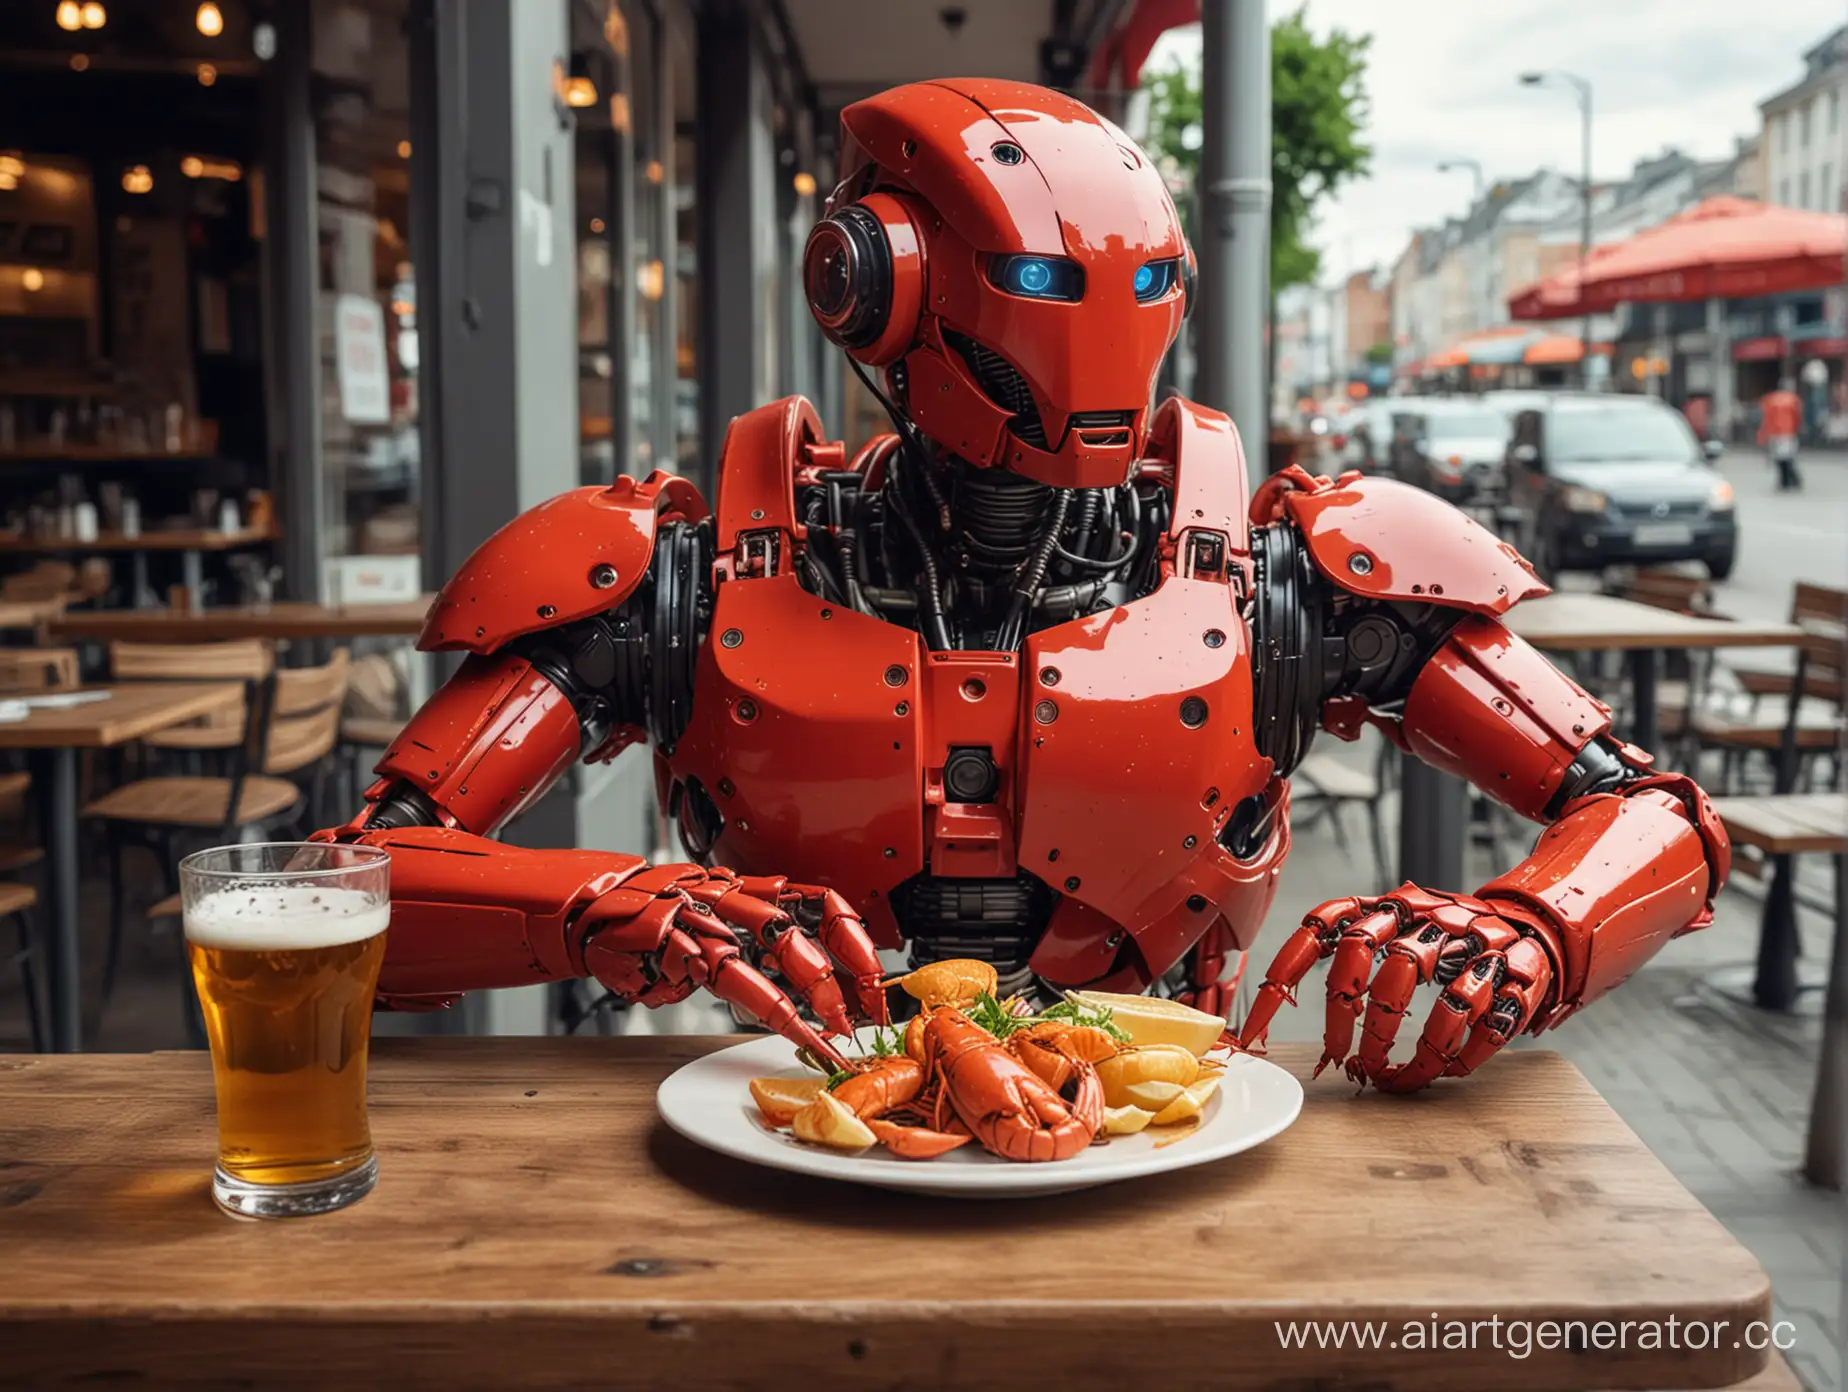 Красный робот ест раков и пьет пиво в кафе